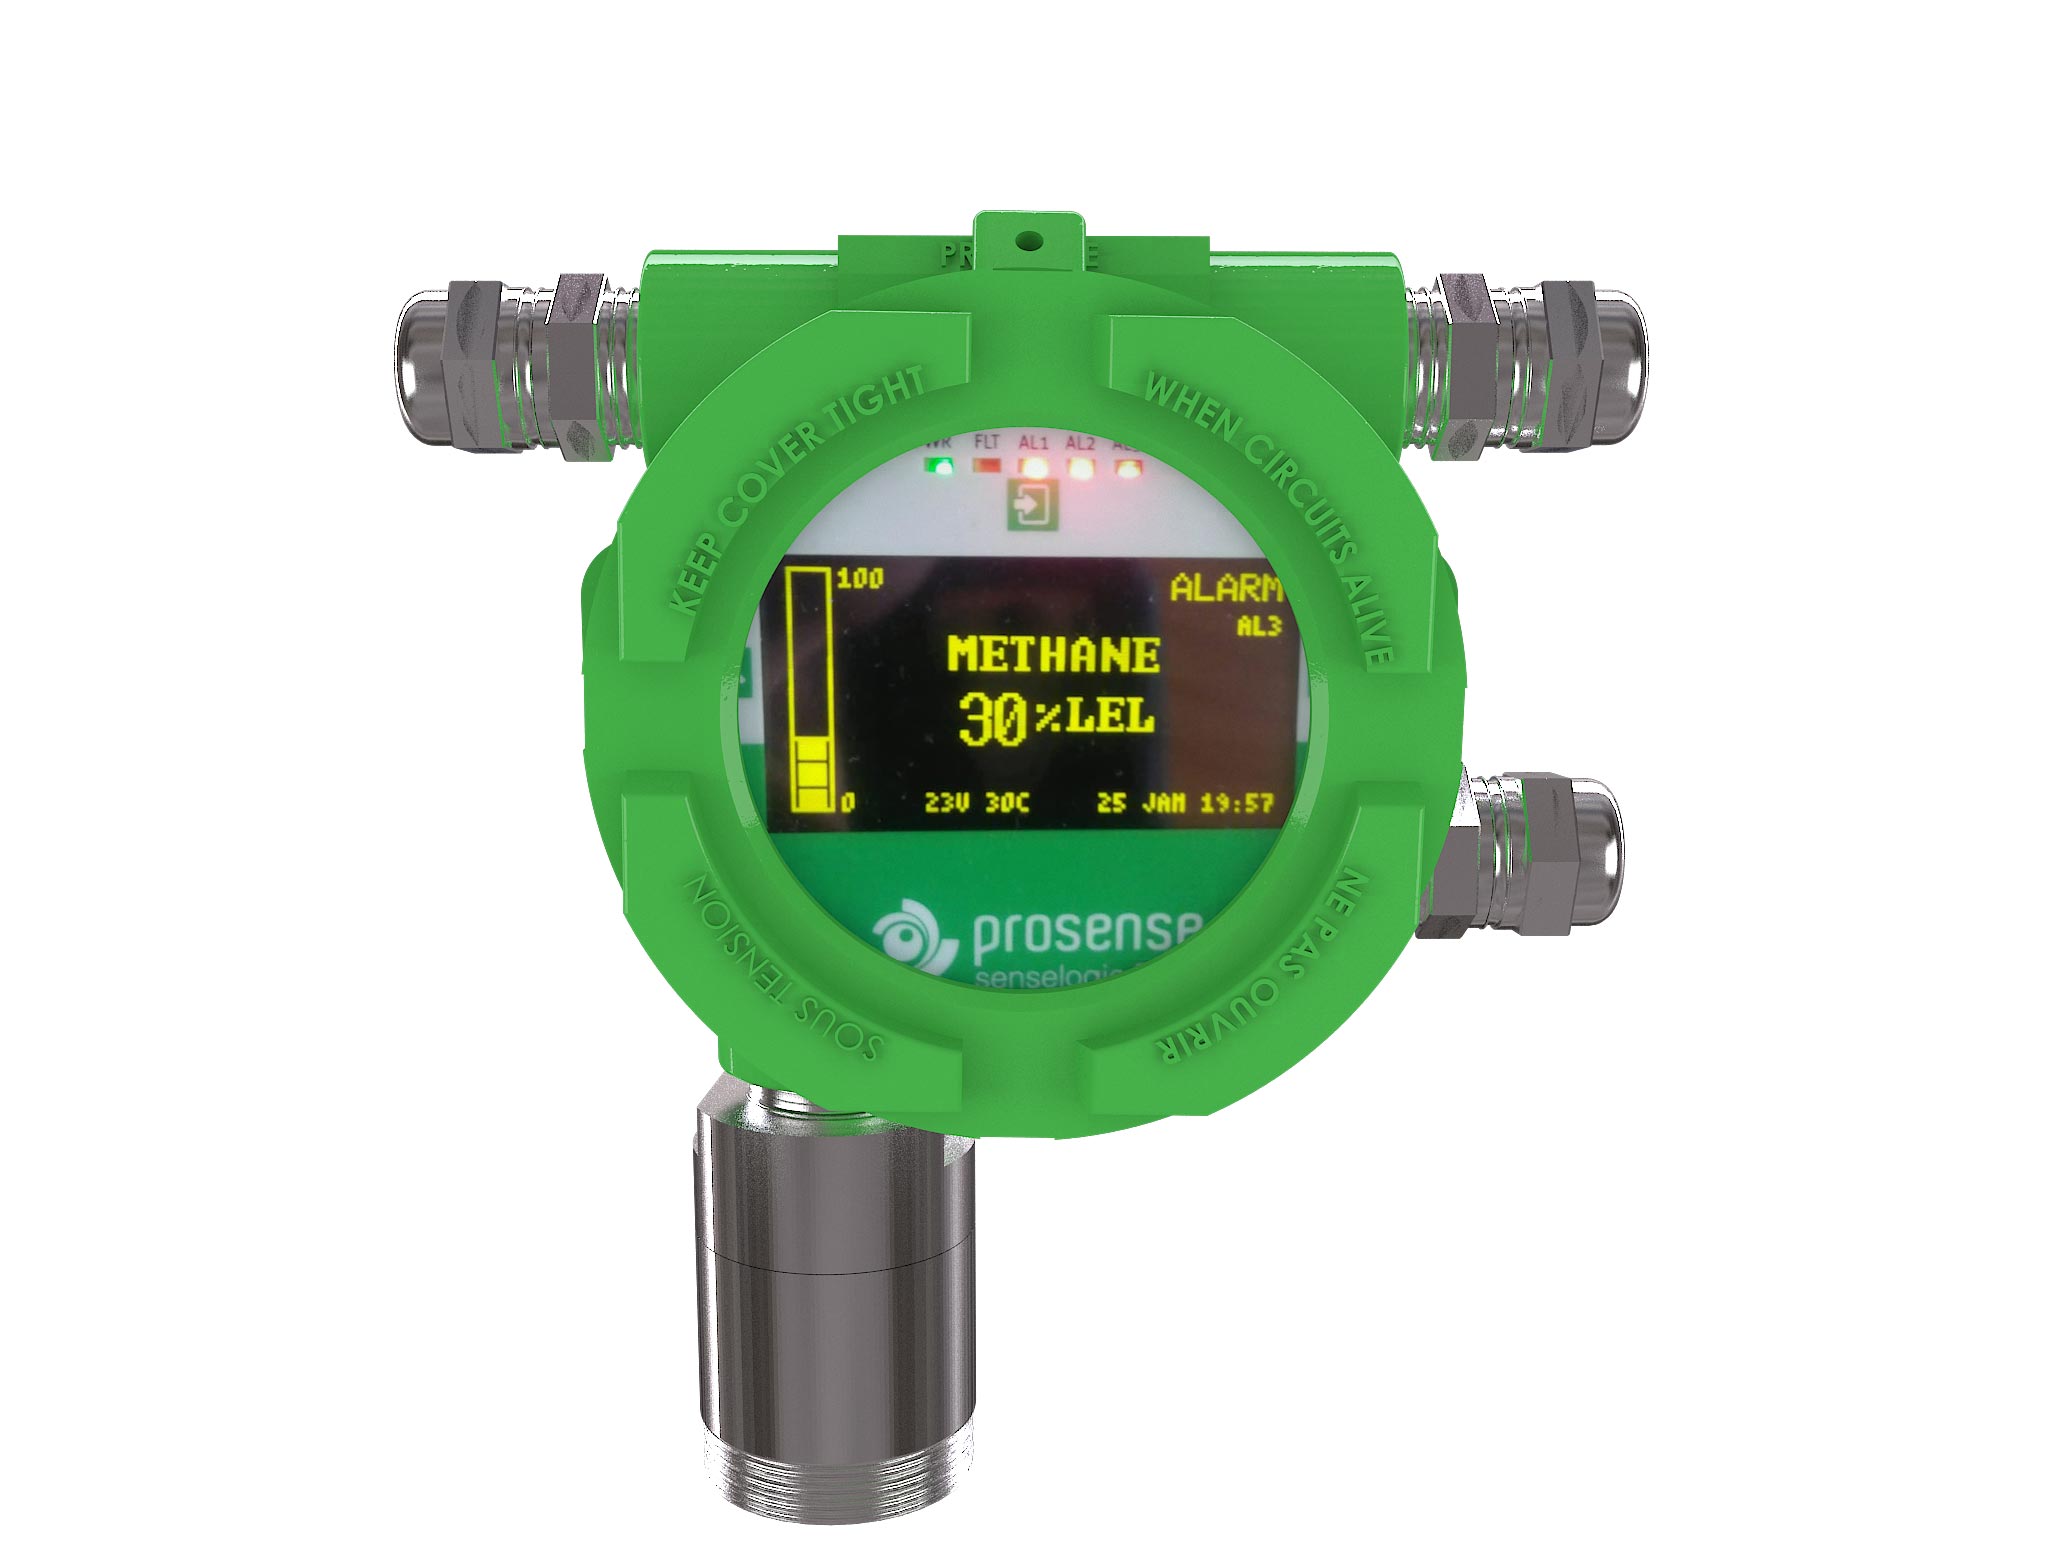 PQD-3433 Propane Gas Detector